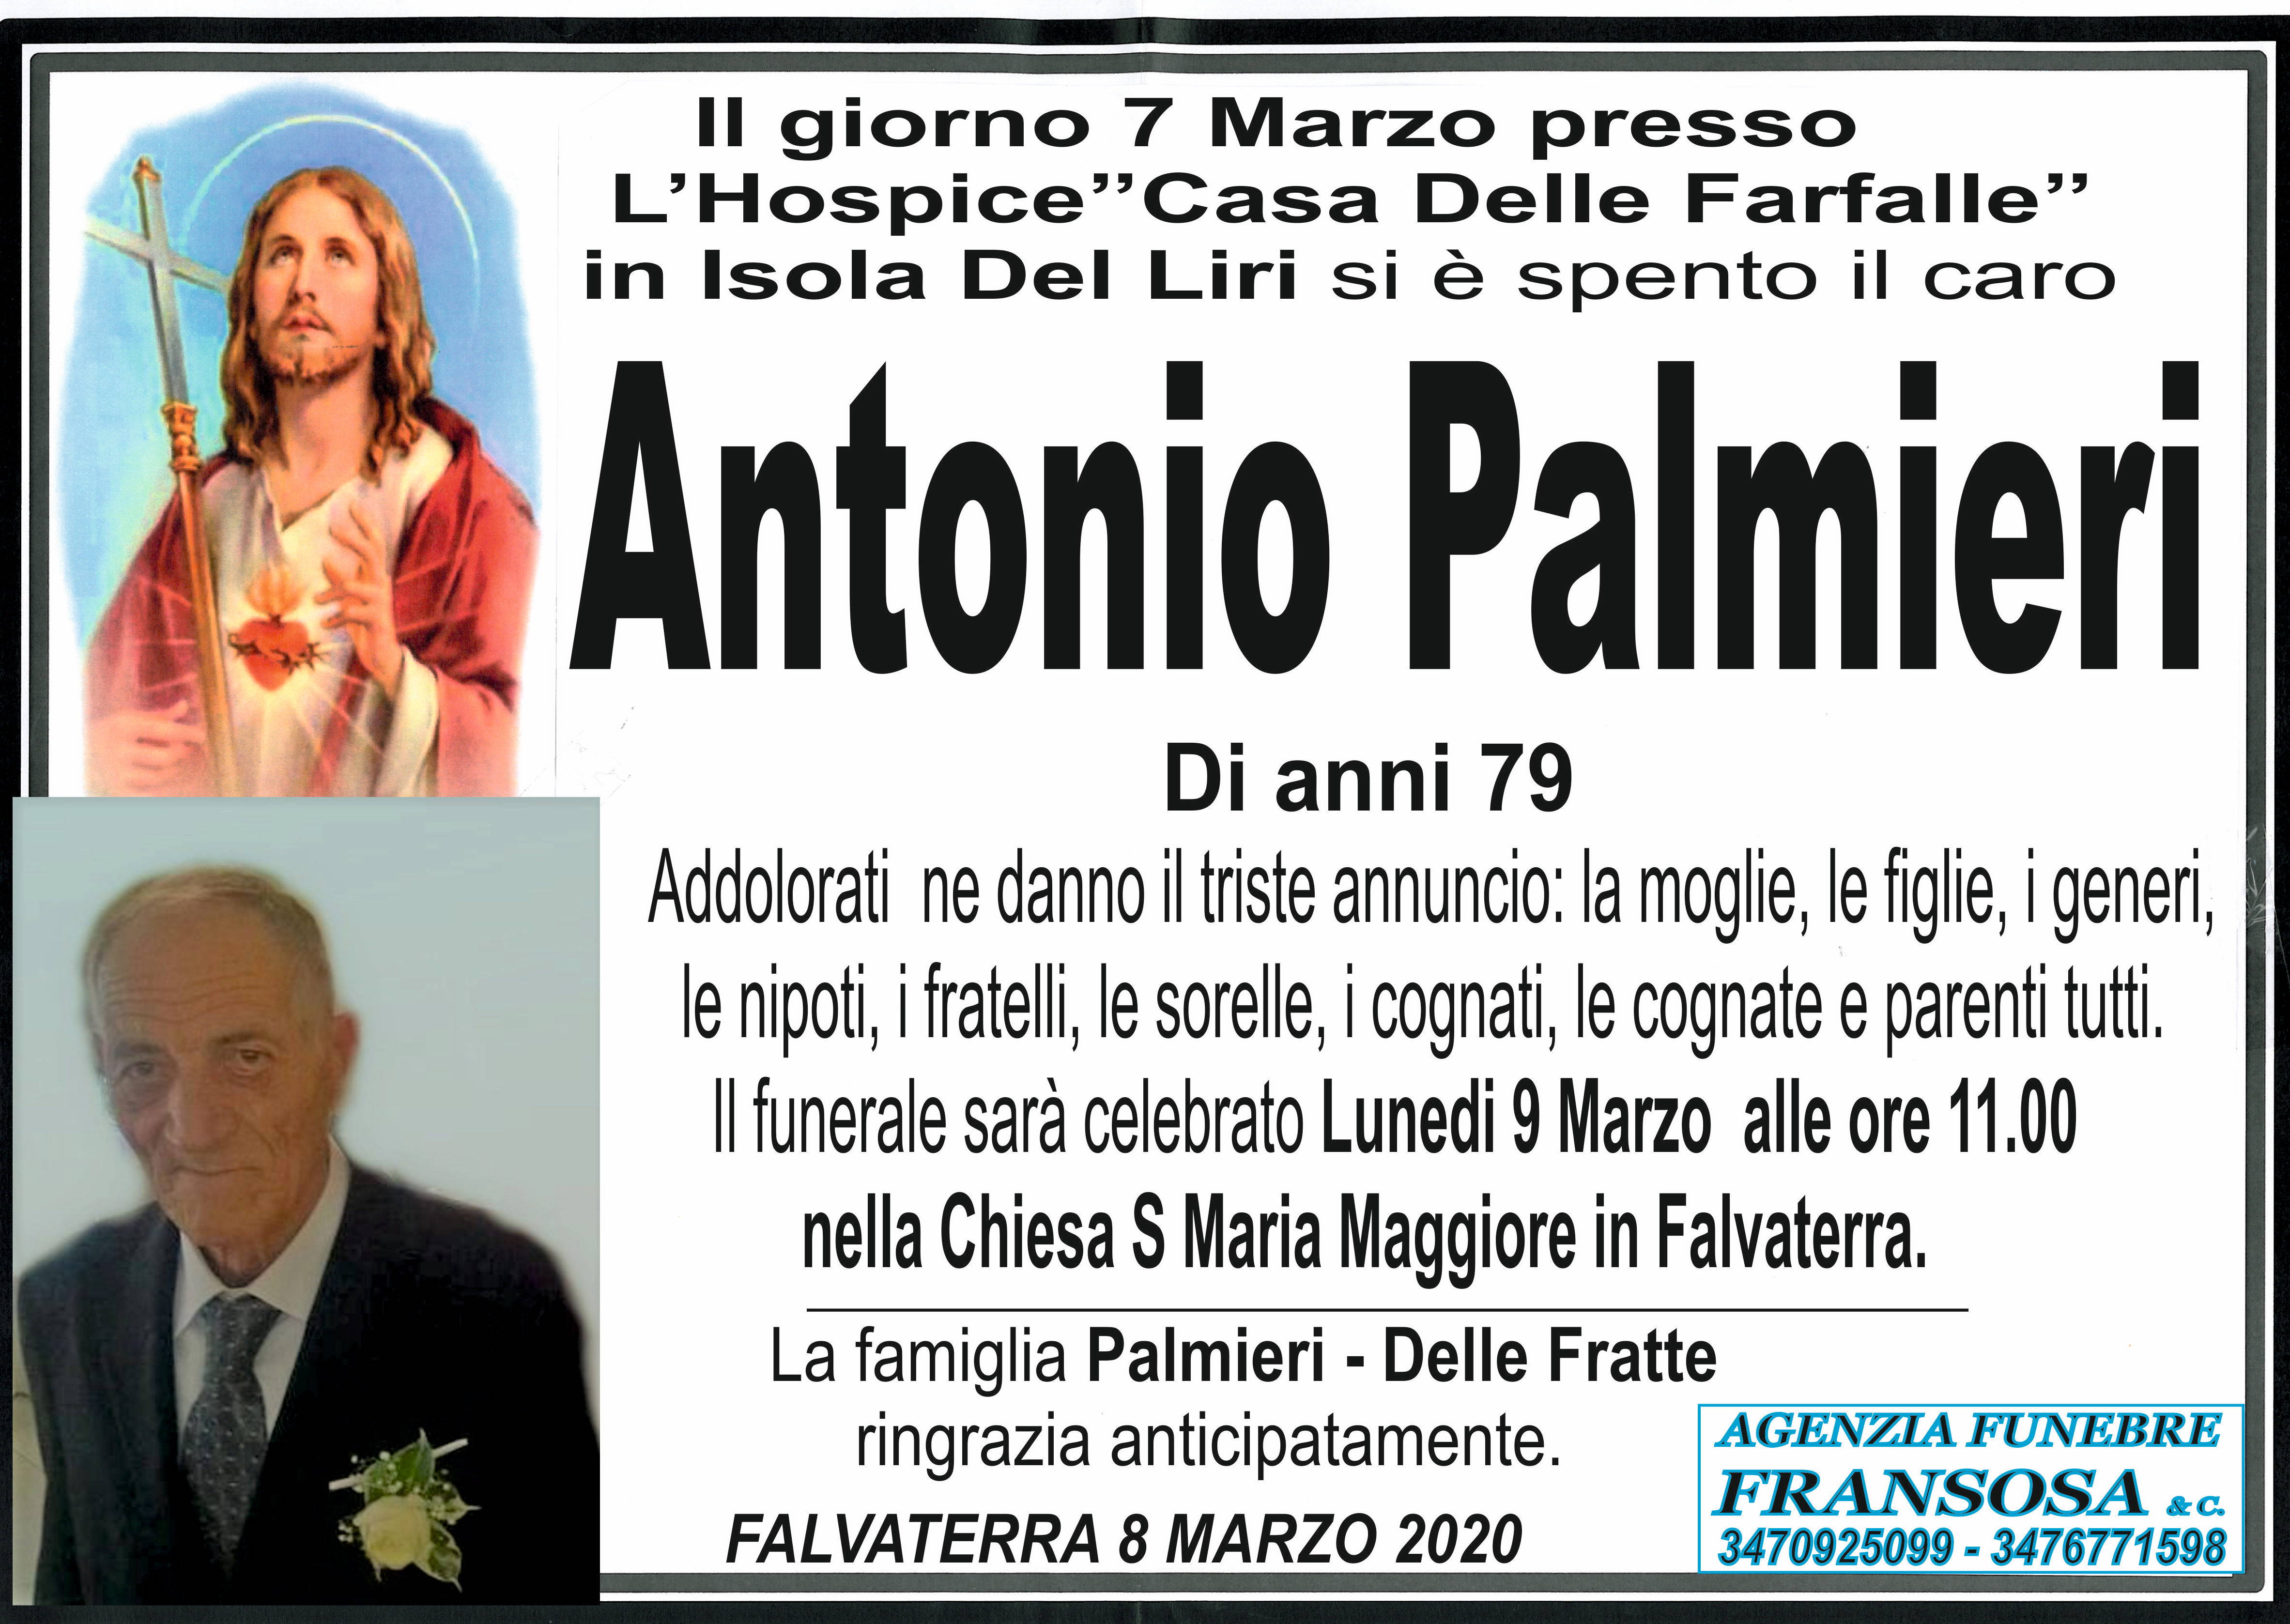 Antonio Palmieri